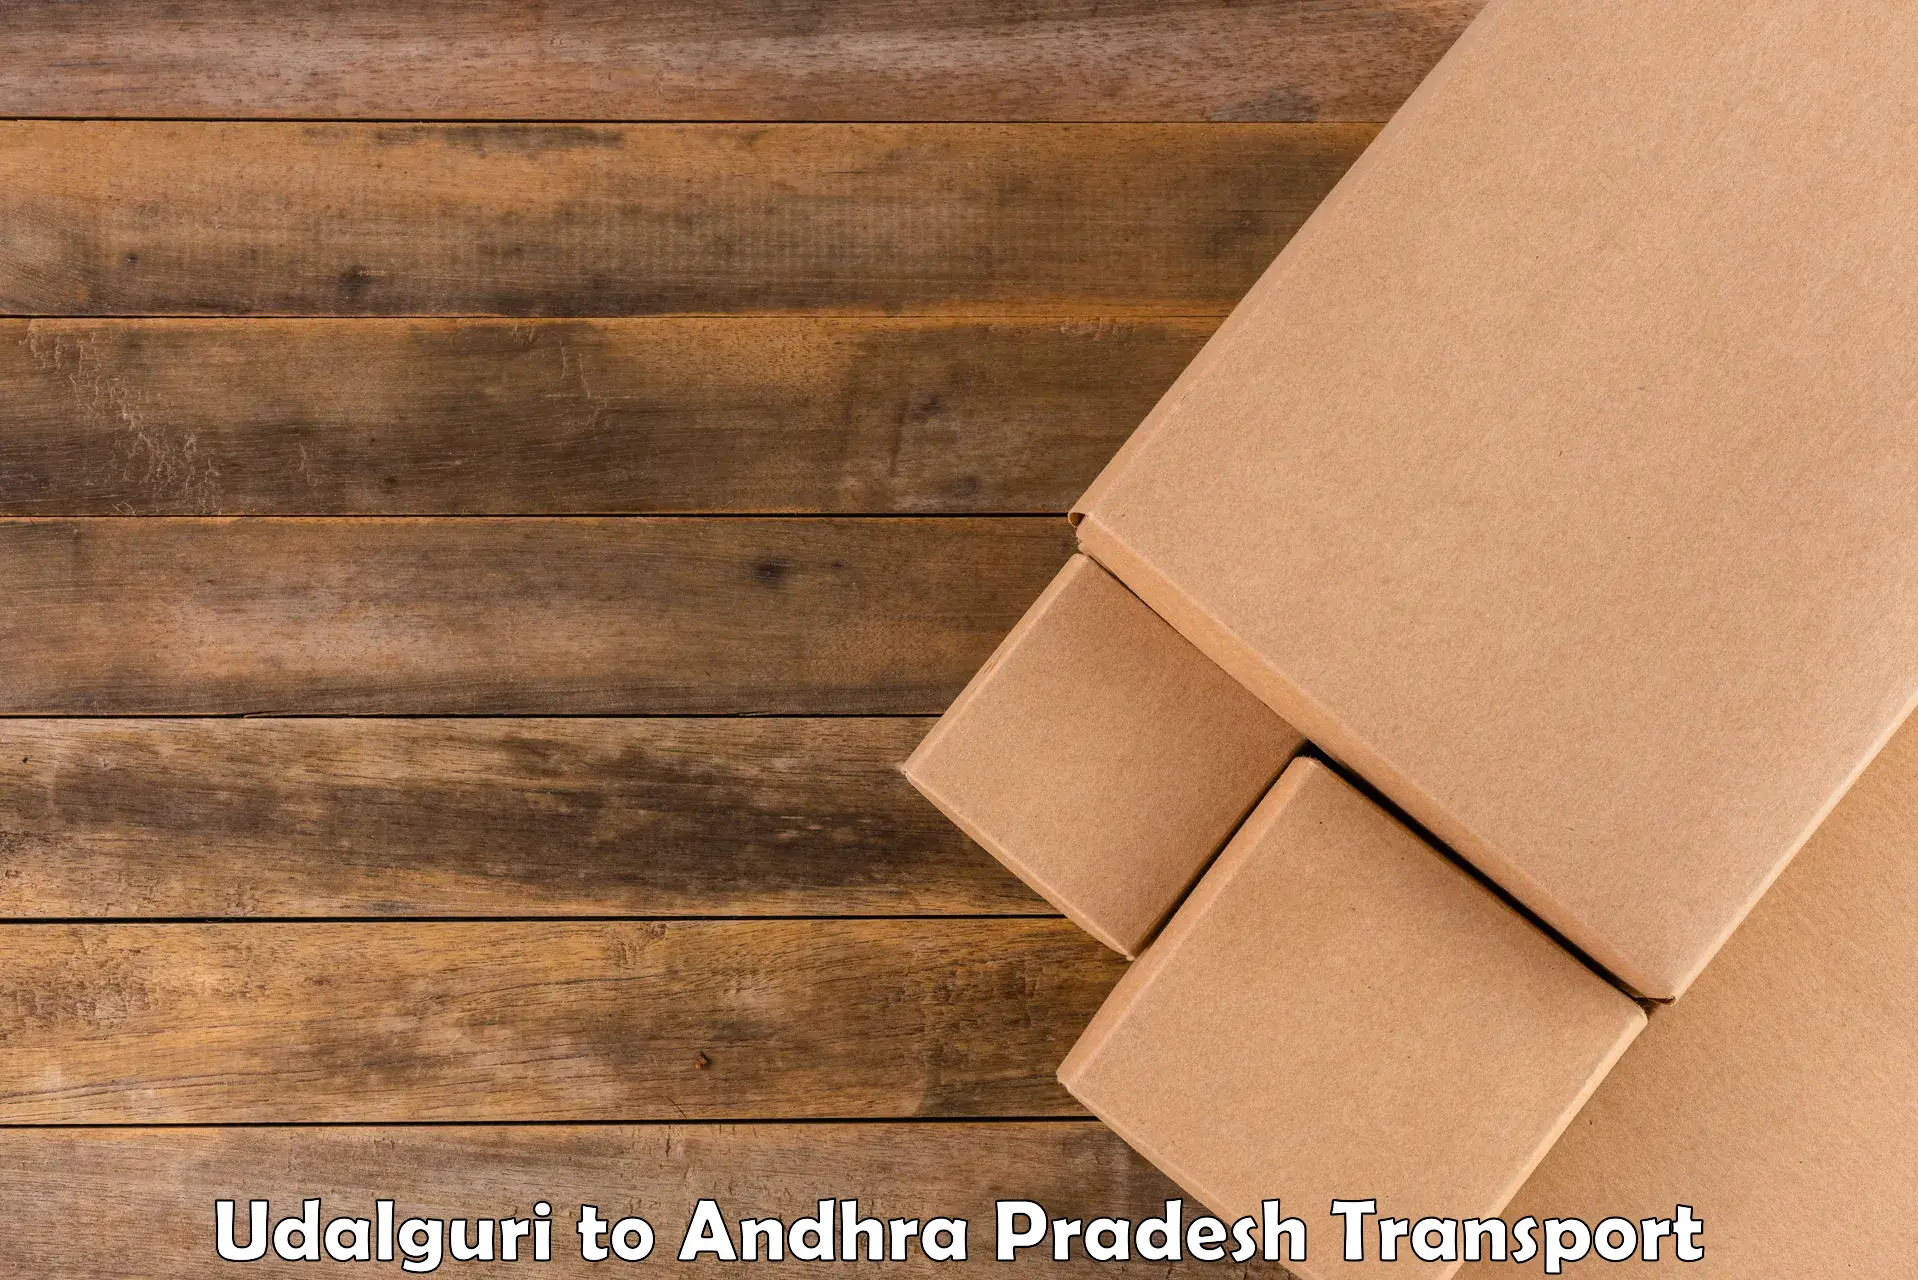 Nearest transport service Udalguri to Tada Tirupati